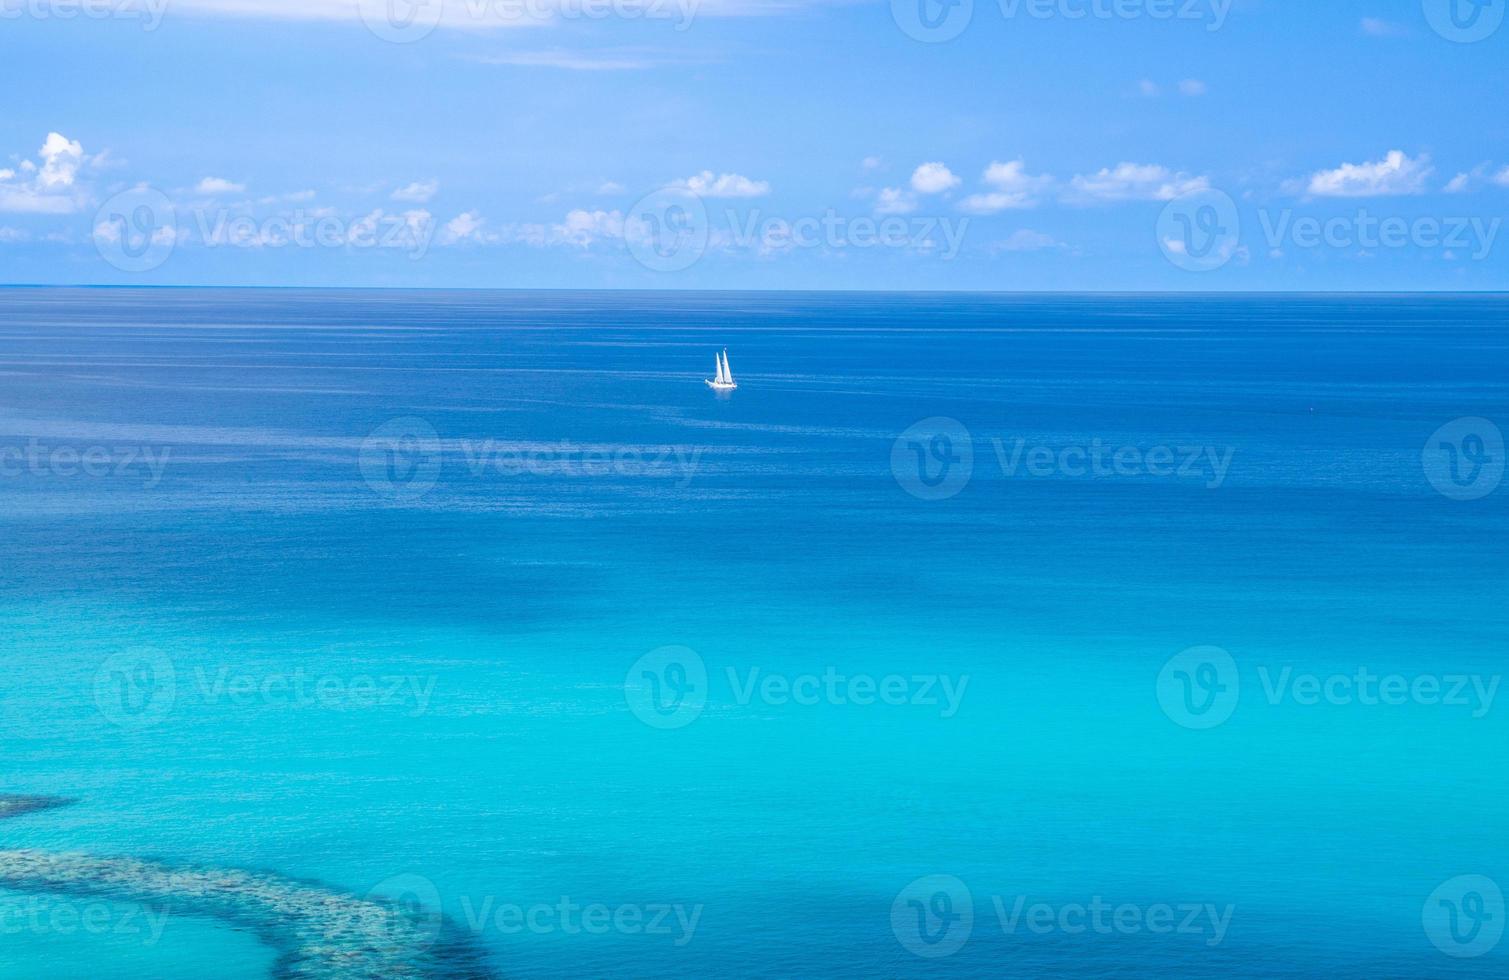 vue aérienne de la mer tyrrhénienne avec de l'eau turquoise,tropea, italie photo